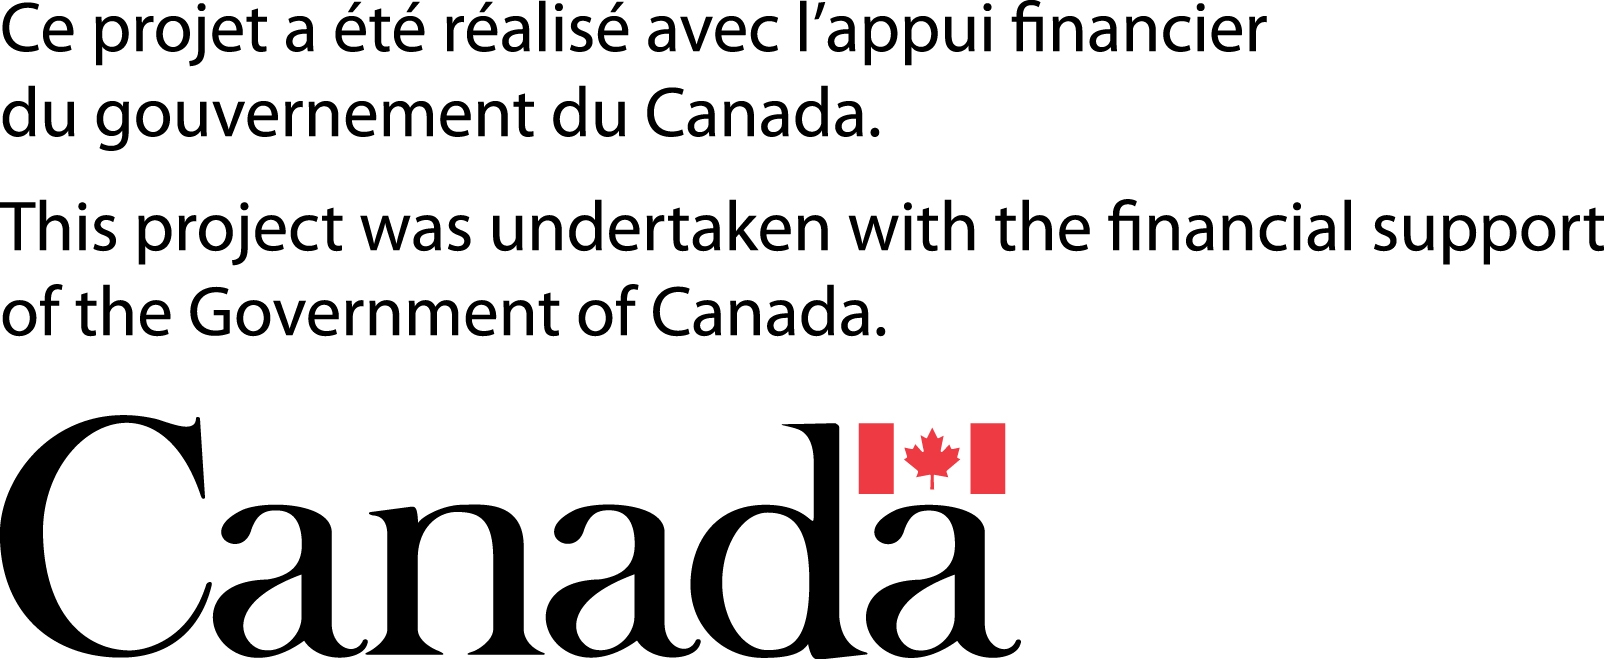 Logo Ce projet a été réalisé avec l'appui financier du gouvernement du Canada